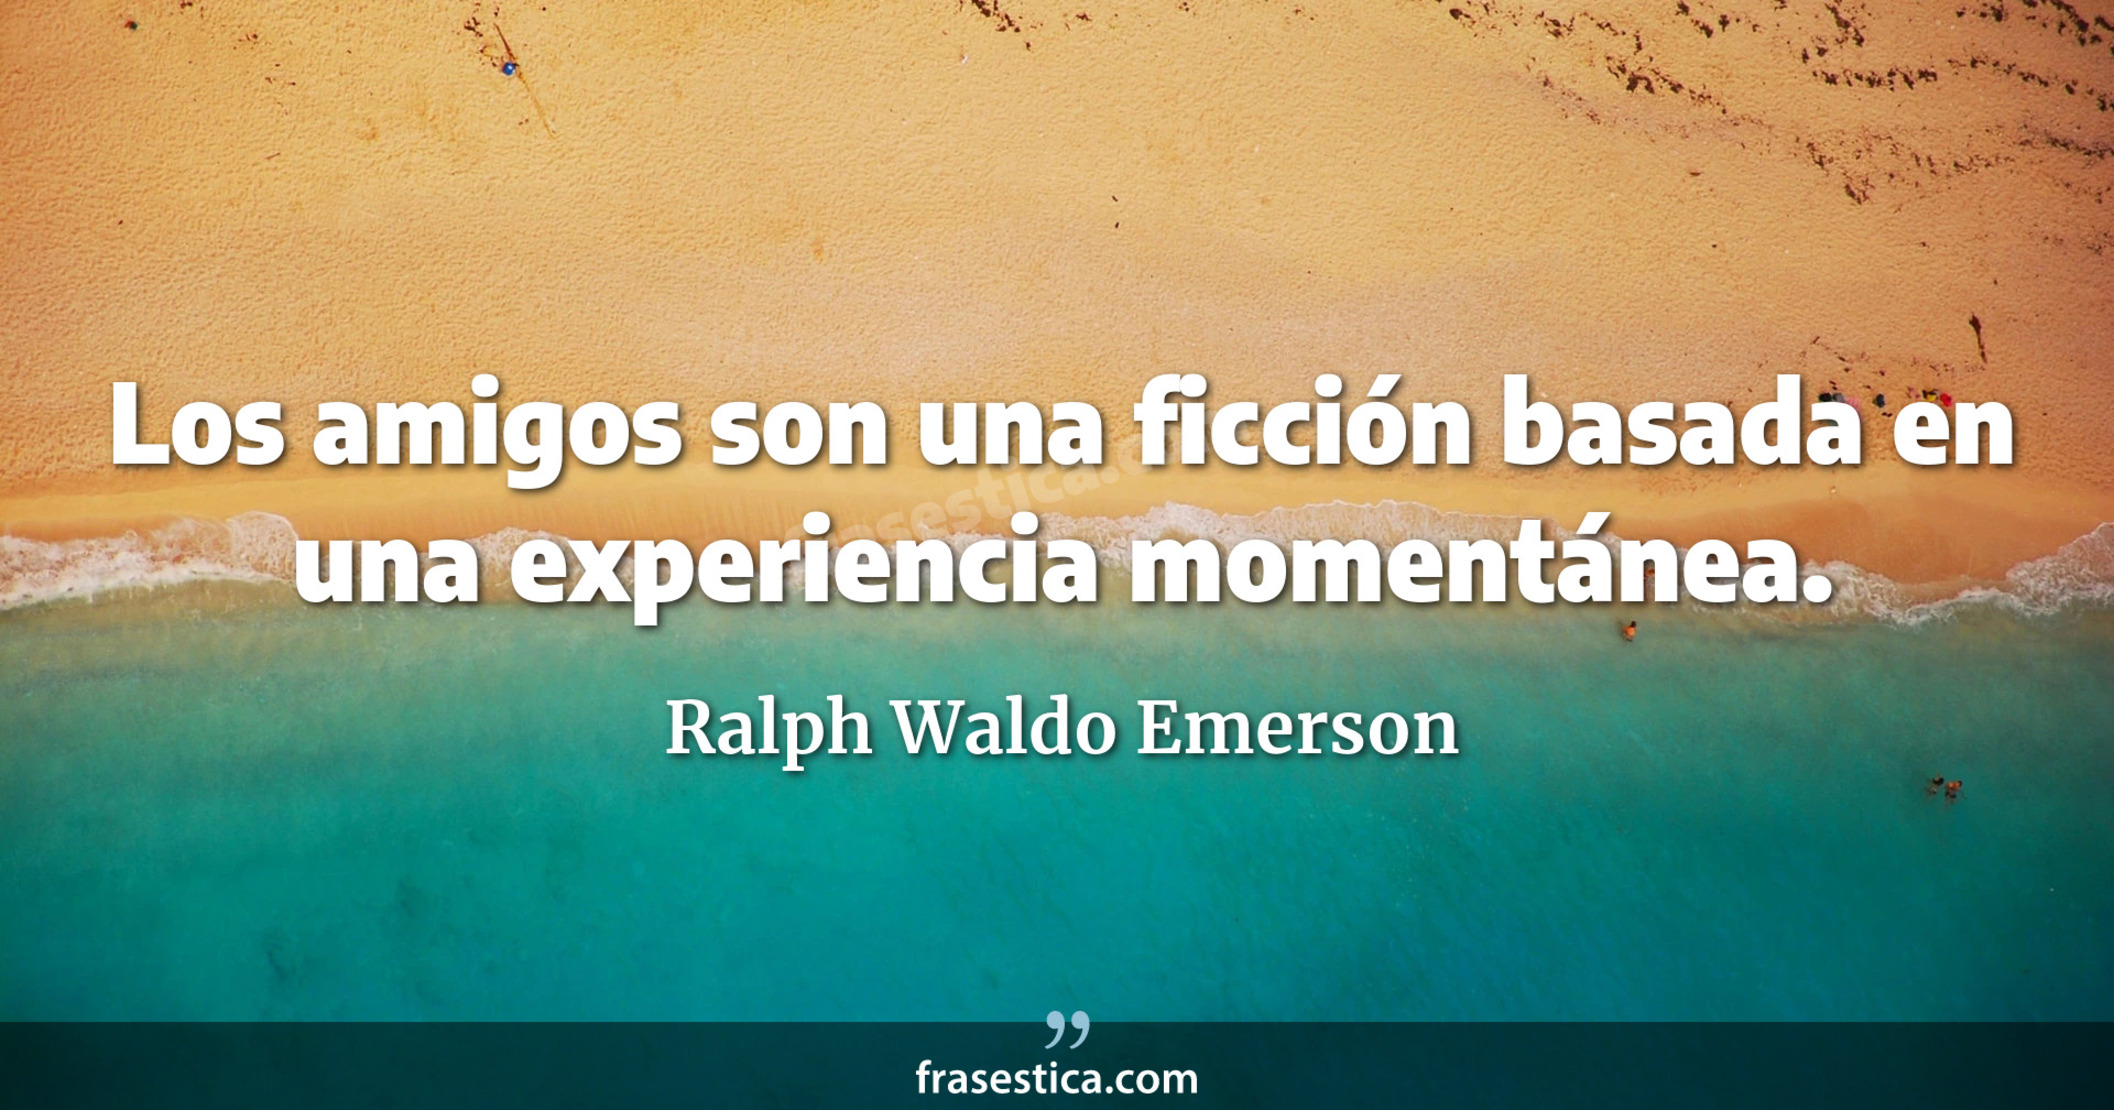 Los amigos son una ficción basada en una experiencia momentánea. - Ralph Waldo Emerson